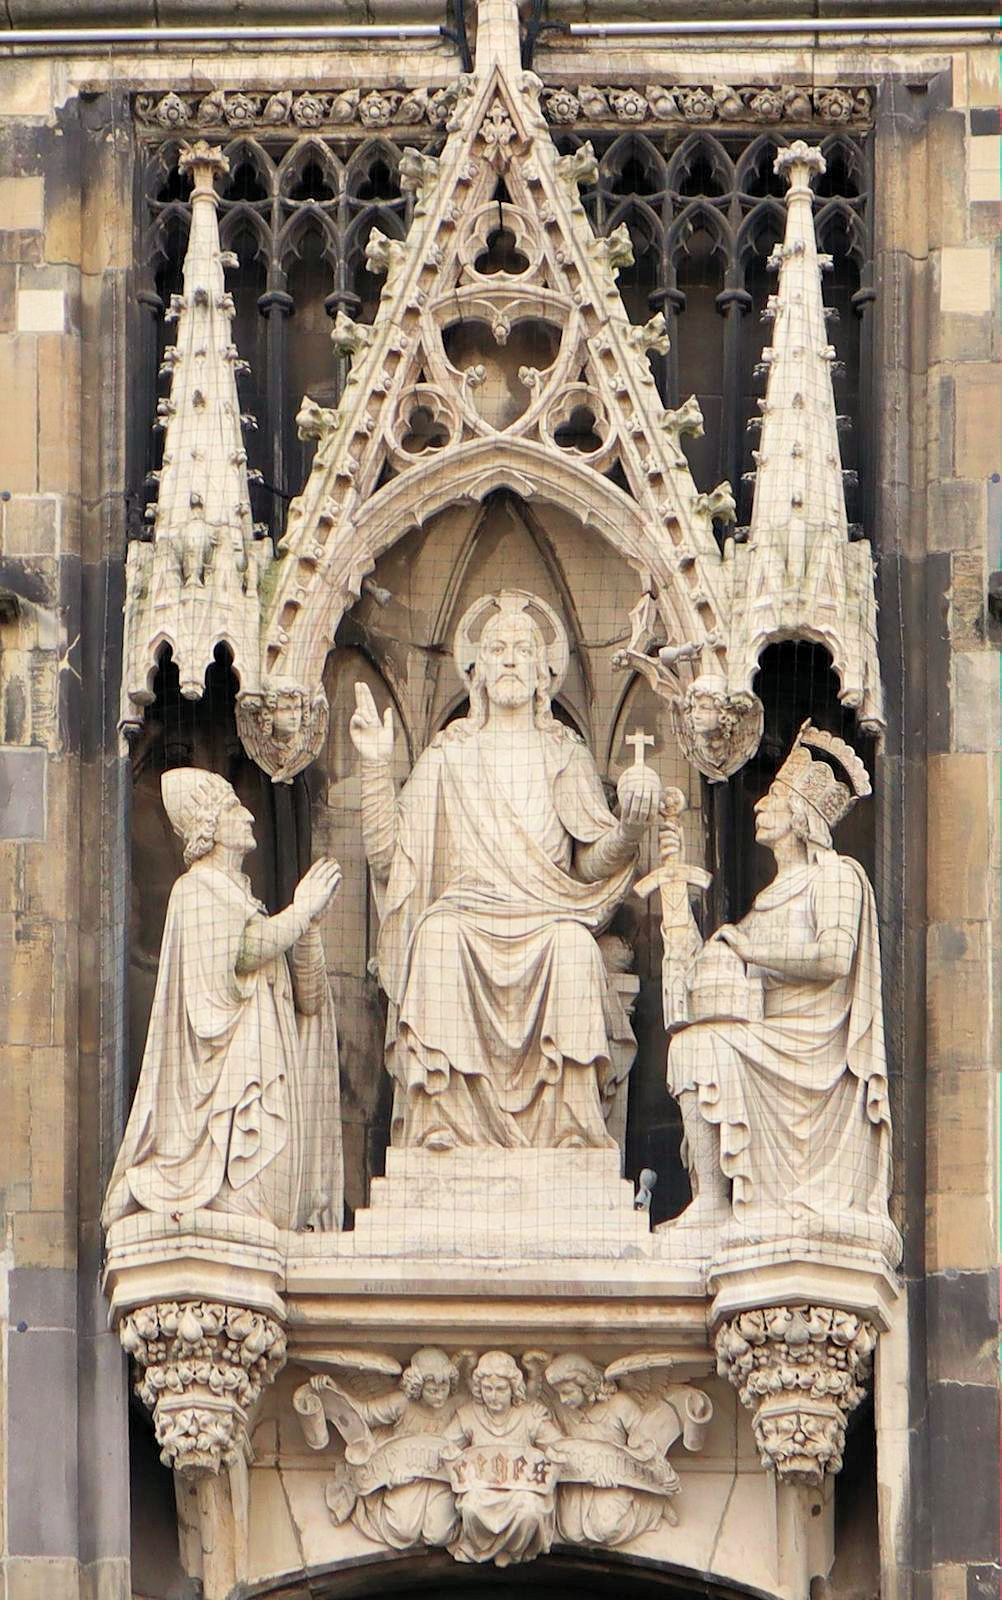 Figurengruppe: Christus mit Papst Leo III. und Kaiser Karl, um 1890, am Rathaus in Aachen